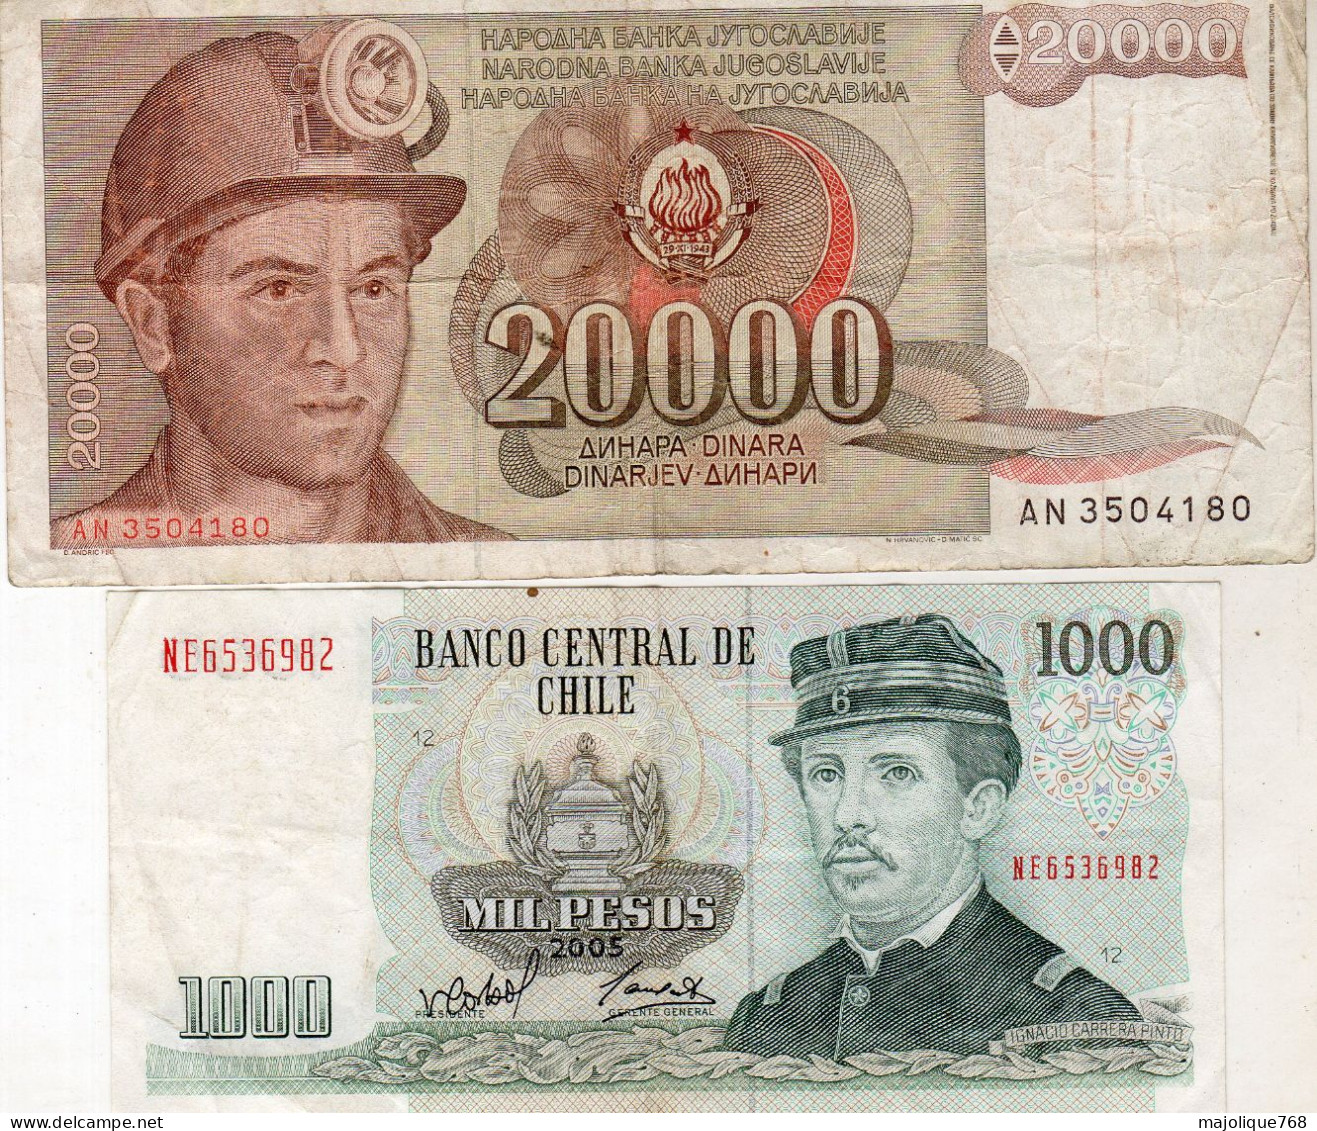 Lot De 2 Billets étranger - 20000 Dinara 1987 De Yougoslavie - 1000 Pésos 2005 Du Chili - Mezclas - Billetes